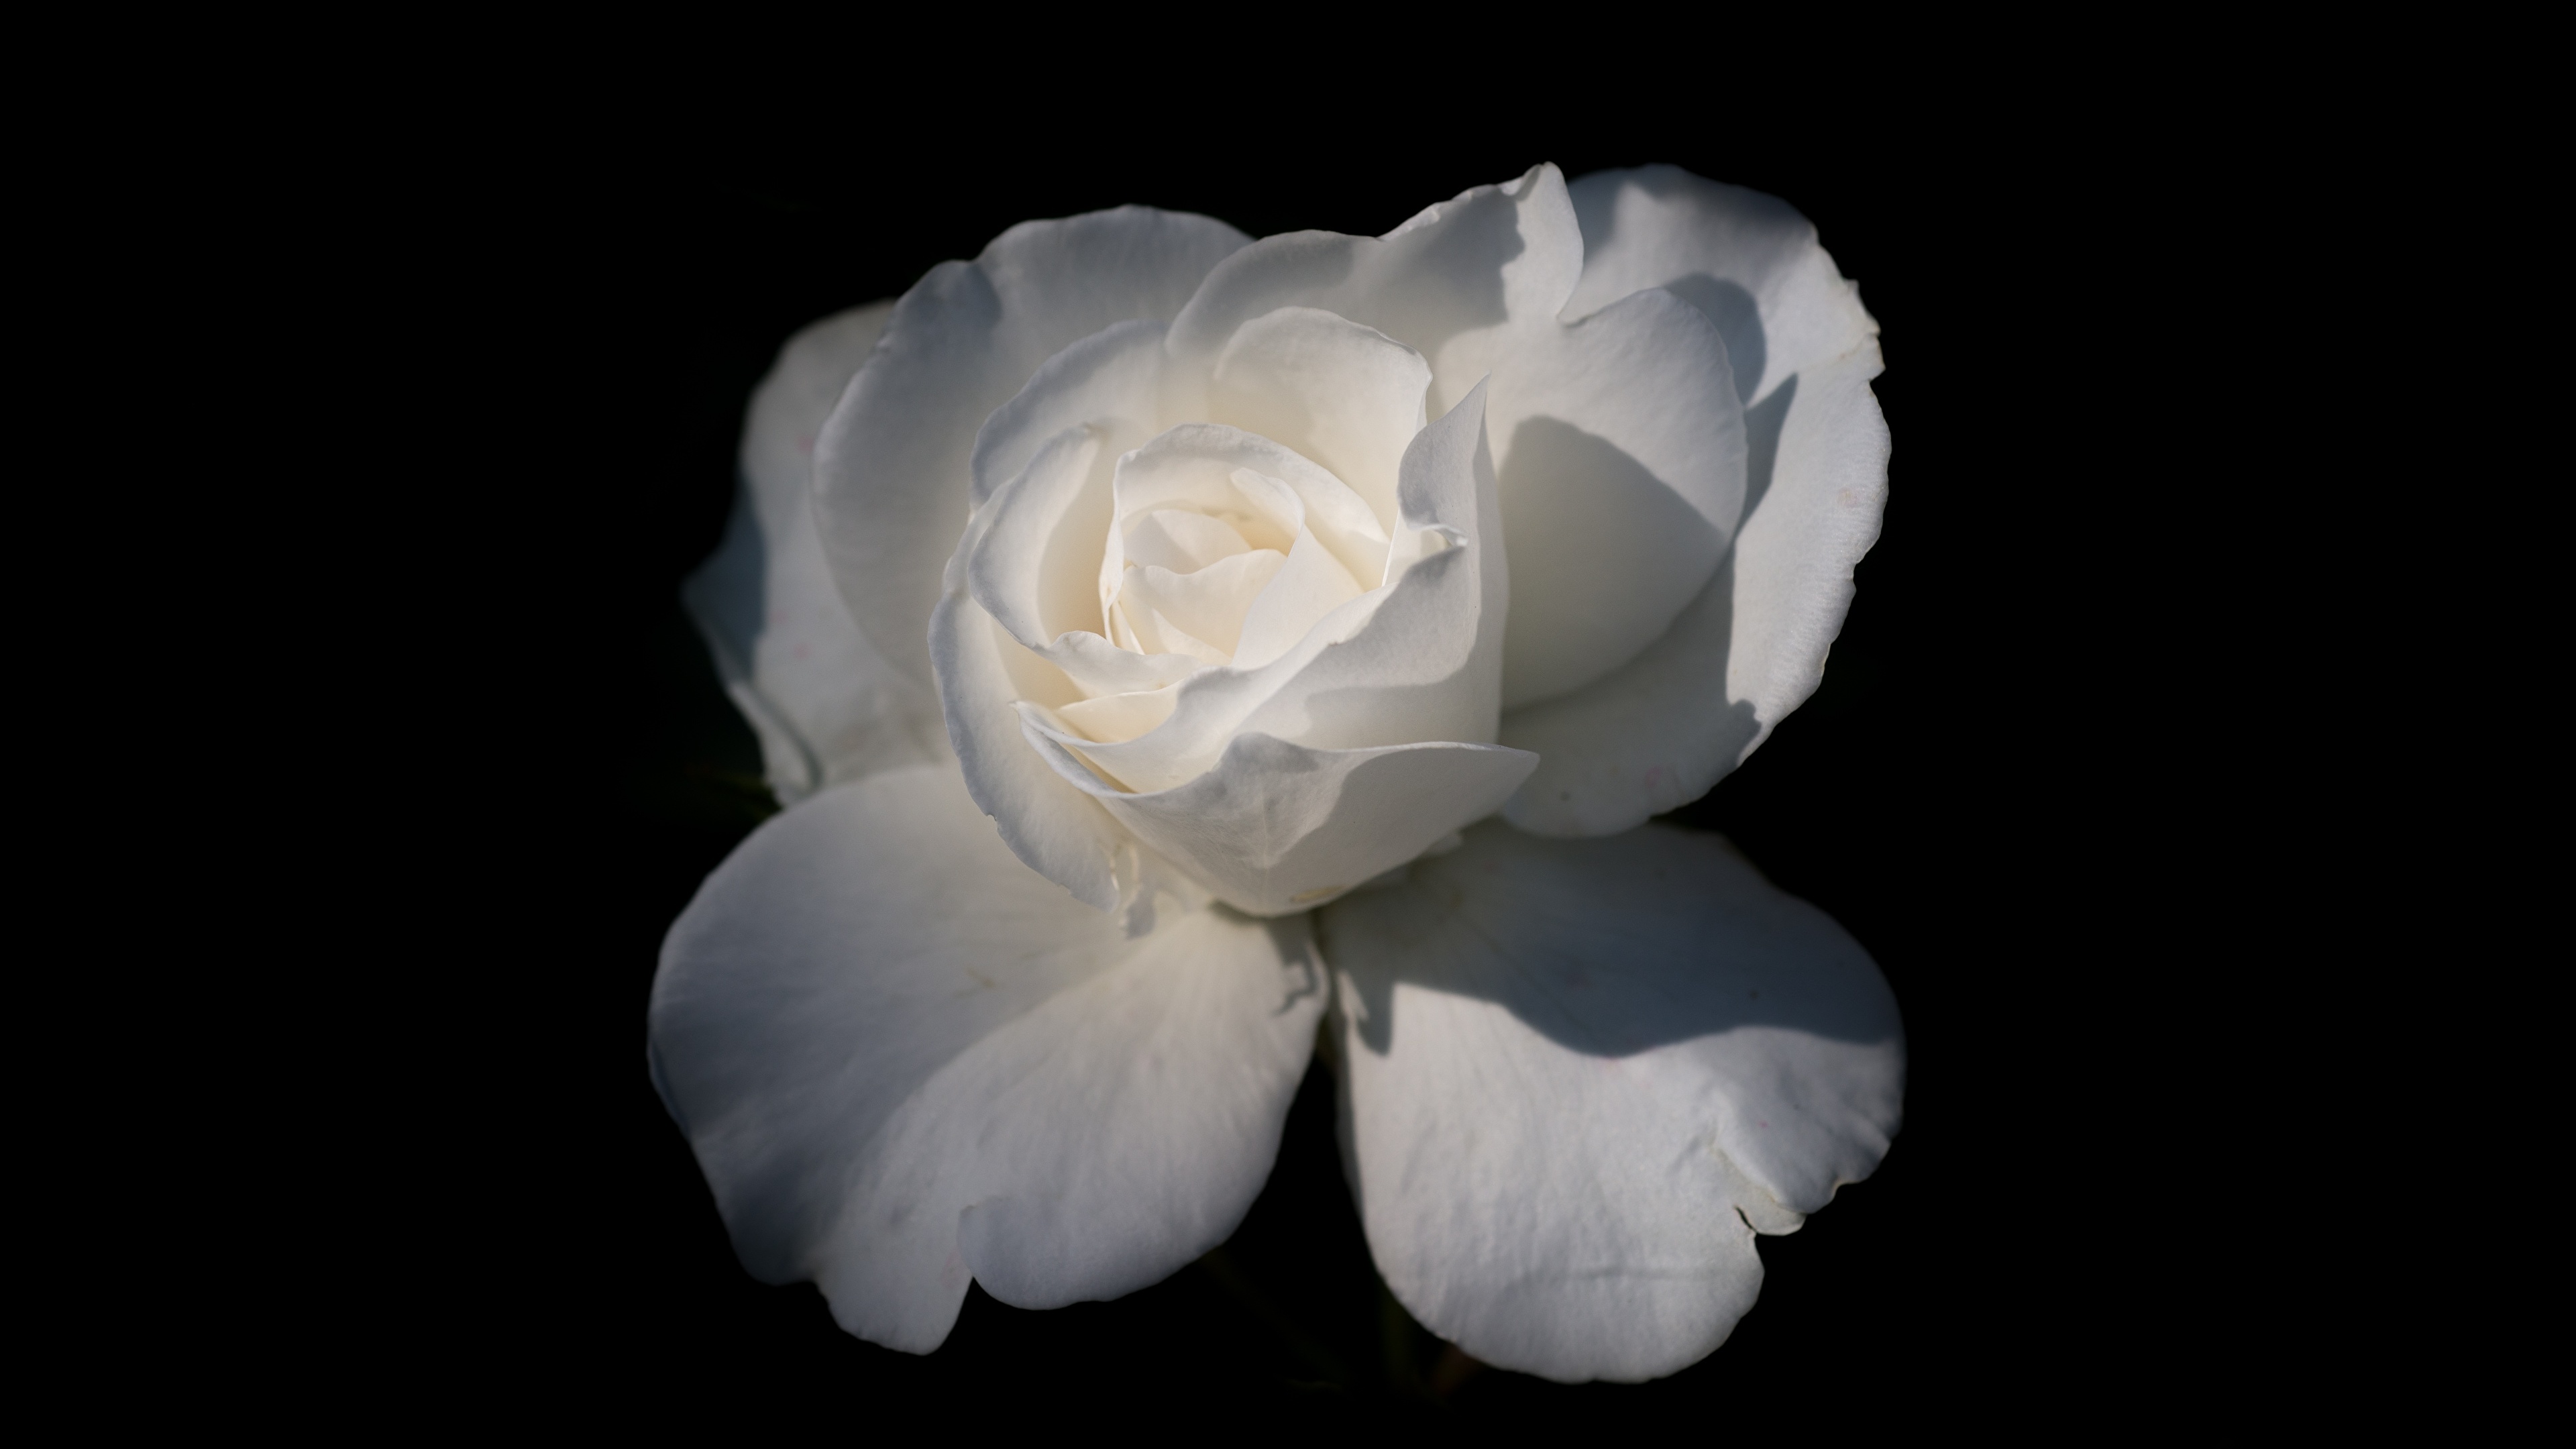 壁紙 3840x2160 クローズアップ バラ 黒色背景 白 花 ダウンロード 写真